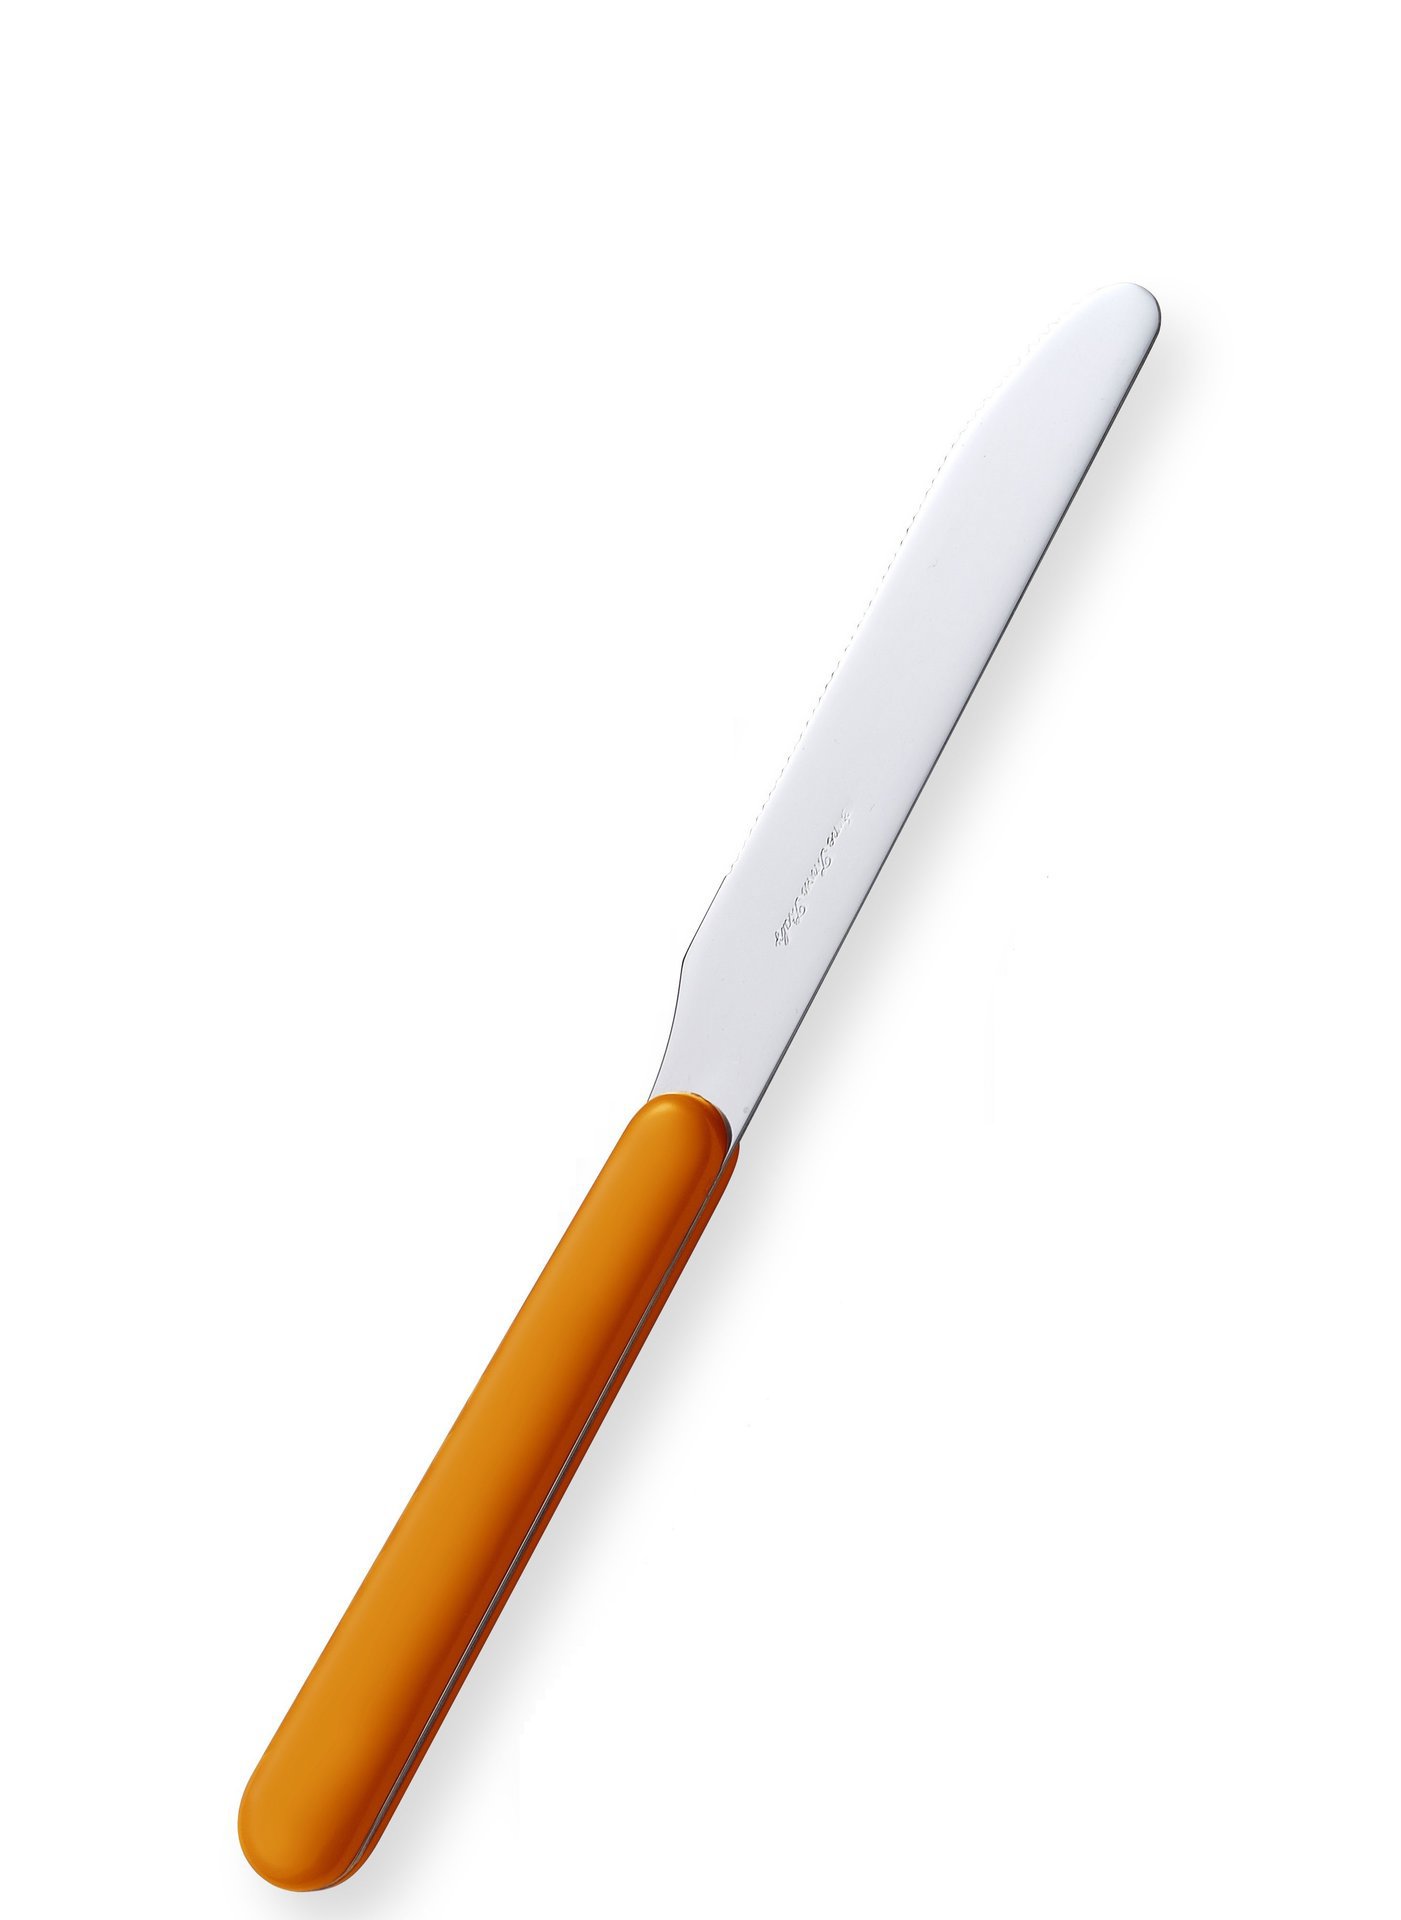 90142919 Нож столовый BONITA с пластиковой ручкой оранжевый 7305_3 2 шт STLM-0115874 EME POSATERIE